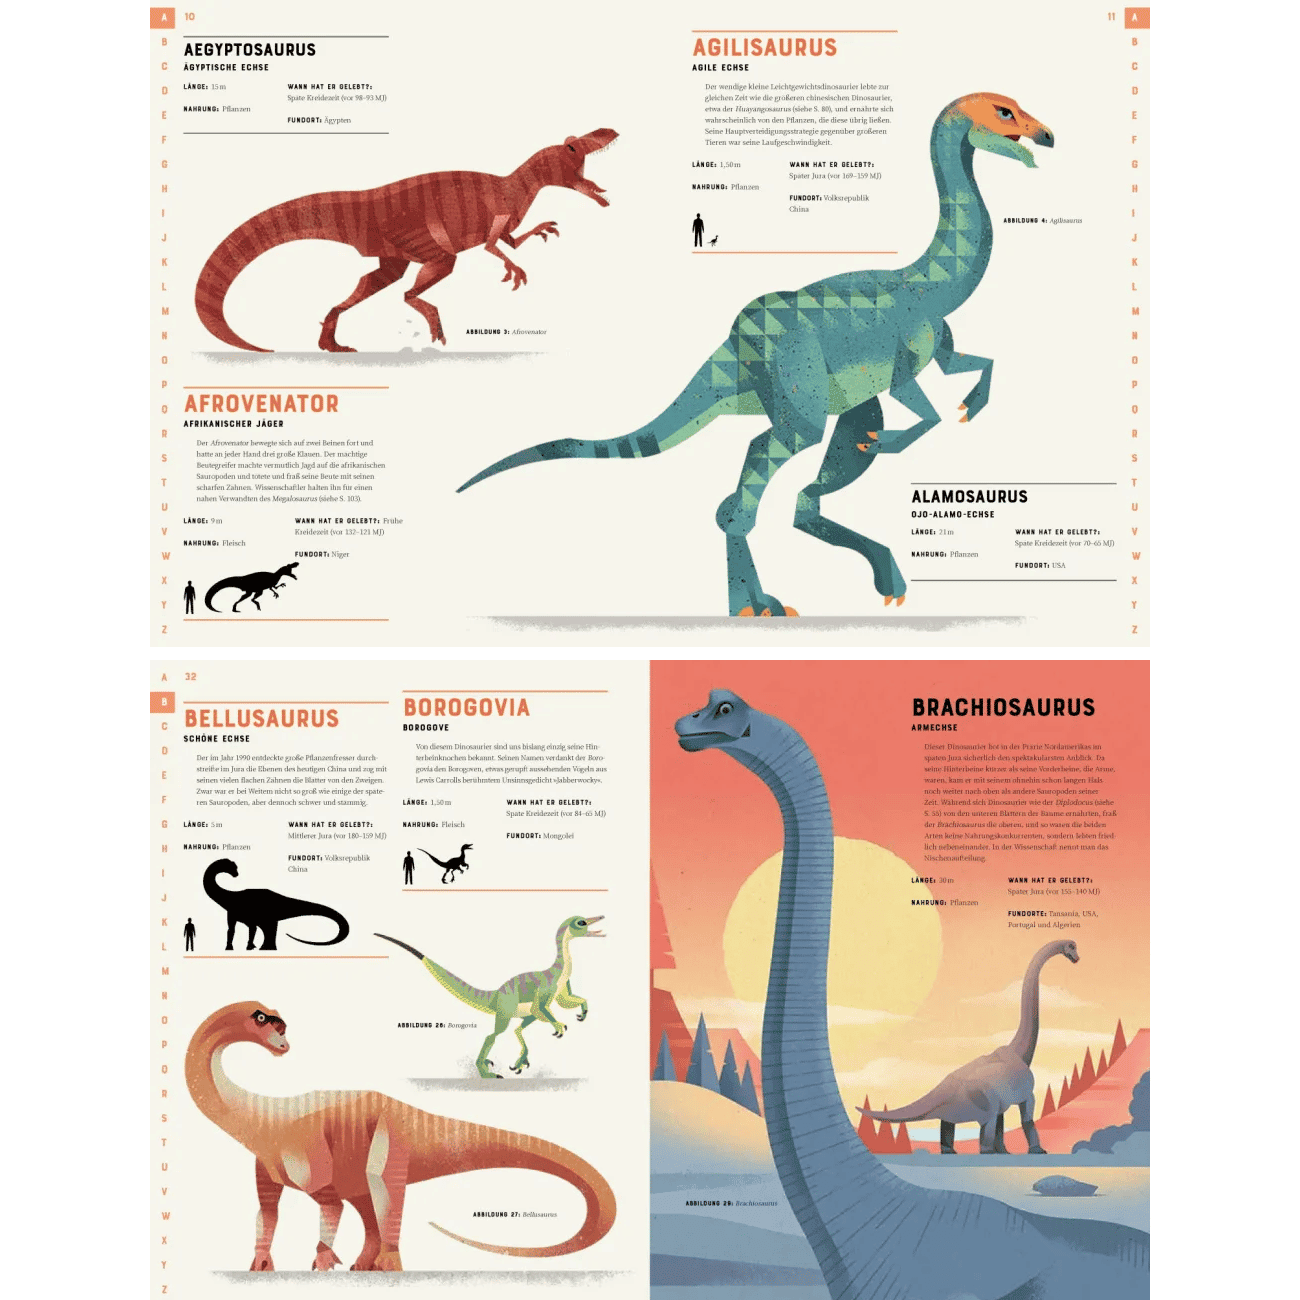 Dinosaurier Die Welt der Urzeitriesen von A-Z by Dieter Braun